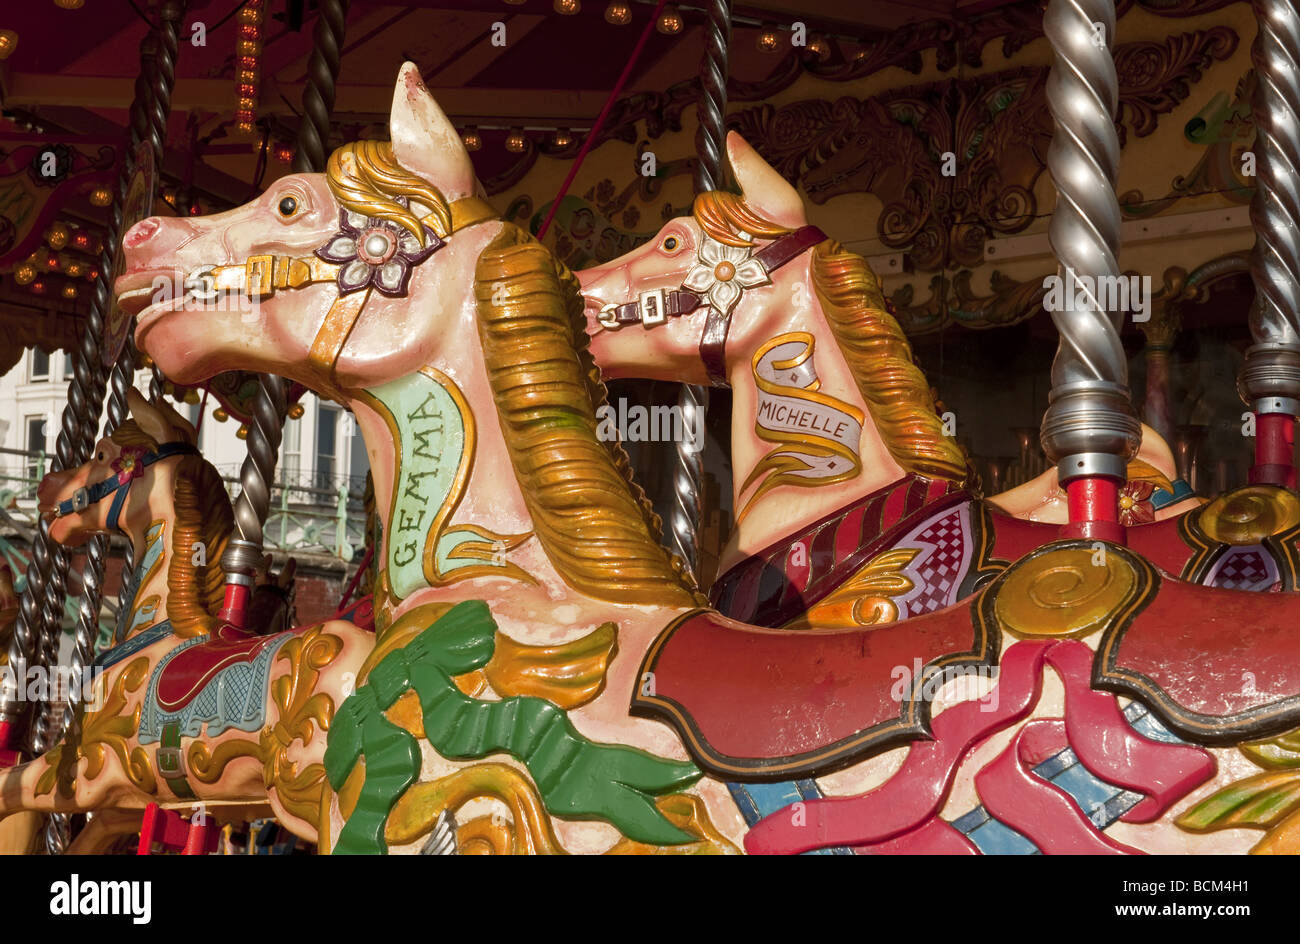 Près de deux chevaux de carrousel peint de couleurs vives sur les rond-point fête foraine manège à des expositions. Banque D'Images